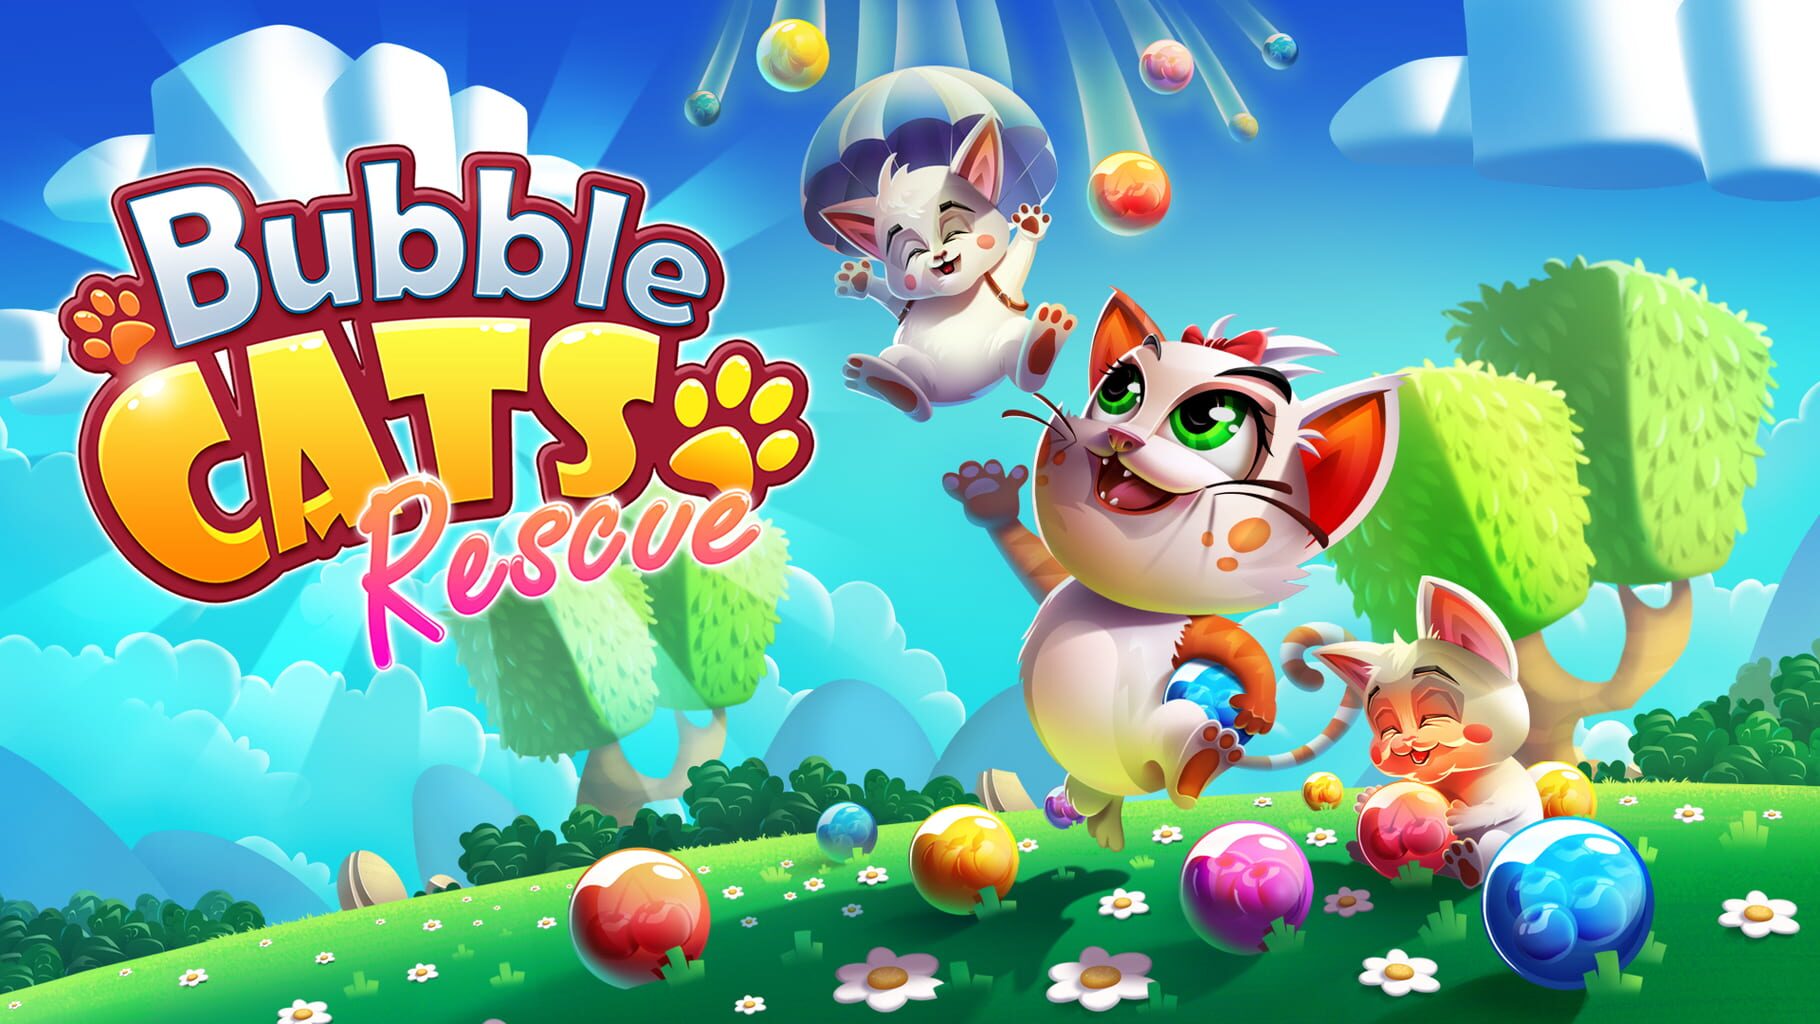 Bubble Cats Rescue artwork